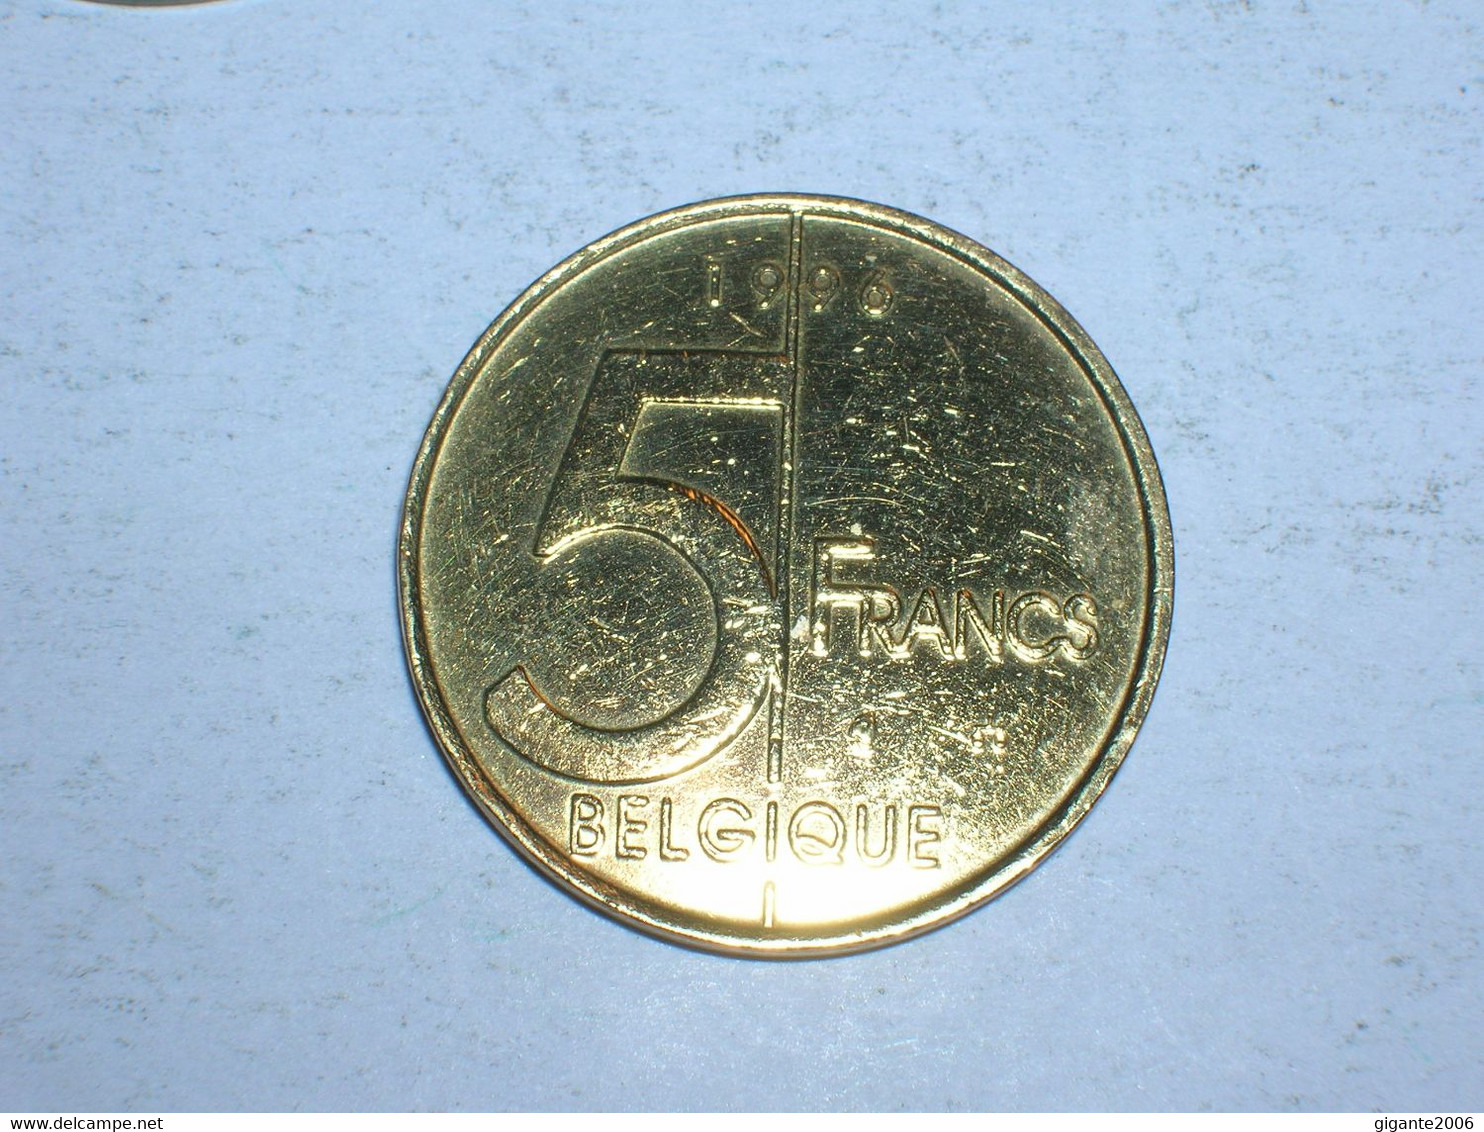 BELGICA 5 FRANCOS 1996 FR (9395) - 5 Francs